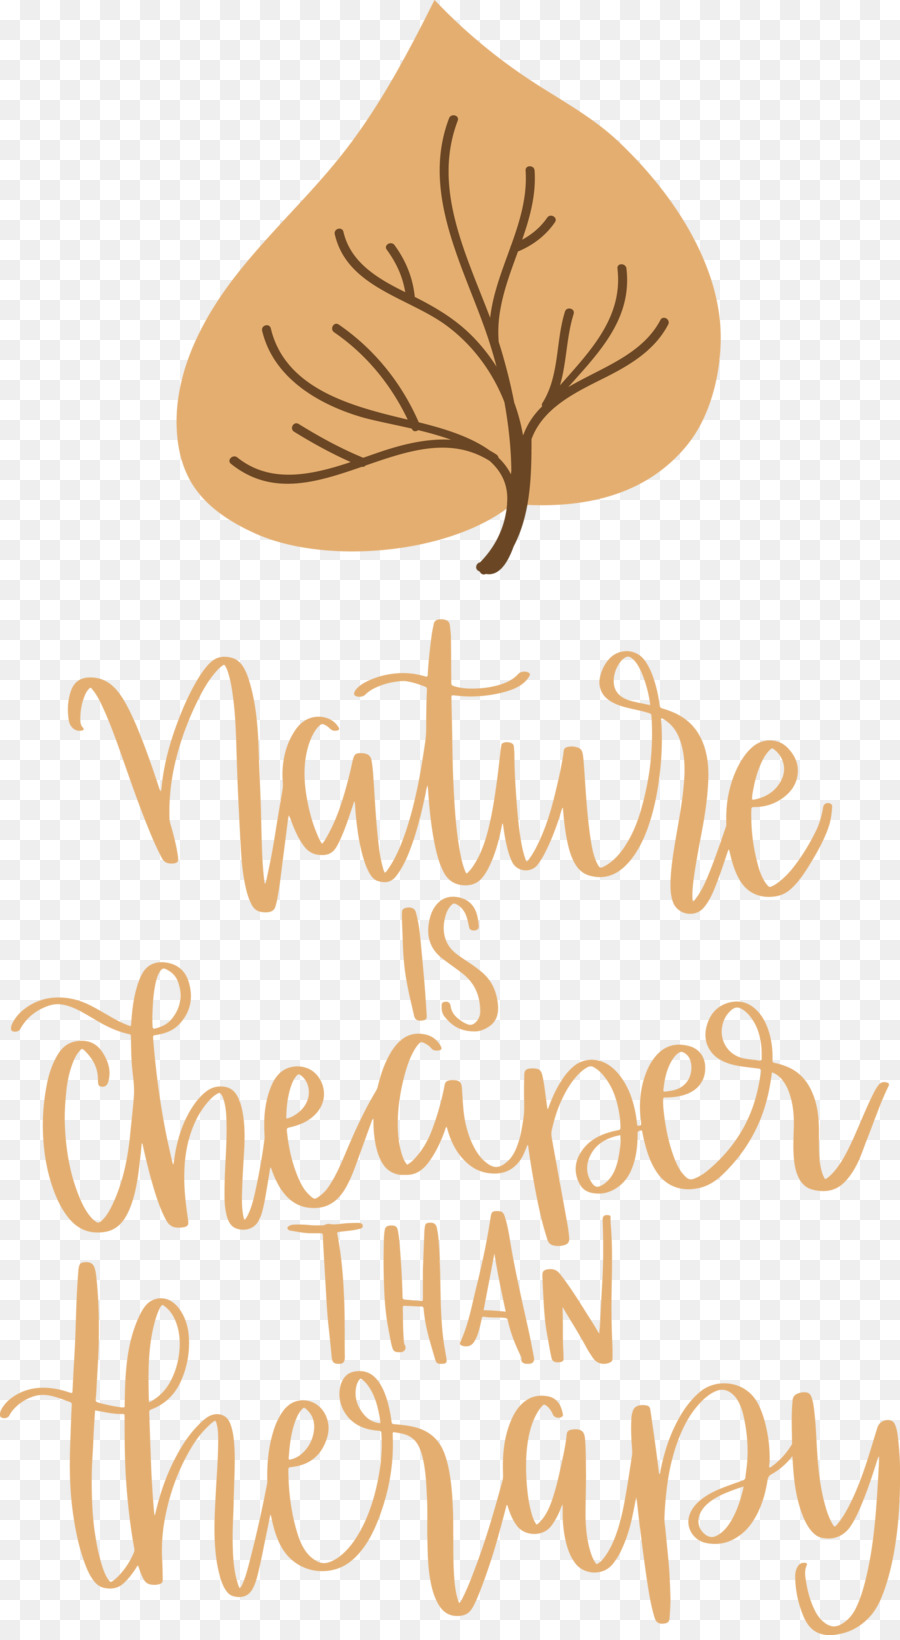 La natura costa meno della terapia - 